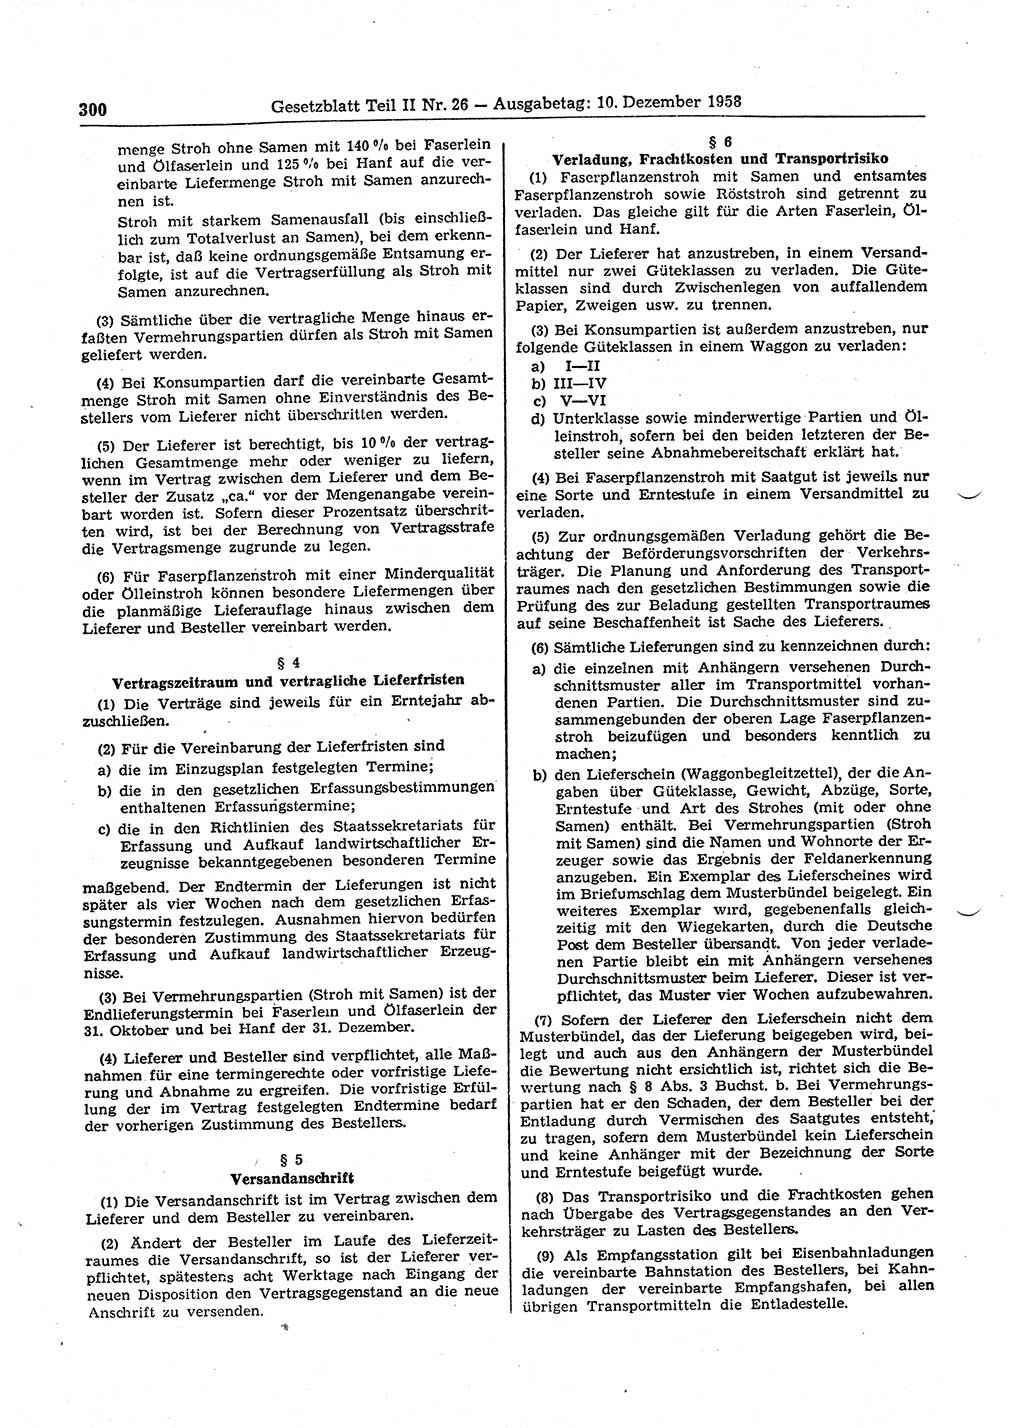 Gesetzblatt (GBl.) der Deutschen Demokratischen Republik (DDR) Teil ⅠⅠ 1958, Seite 300 (GBl. DDR ⅠⅠ 1958, S. 300)